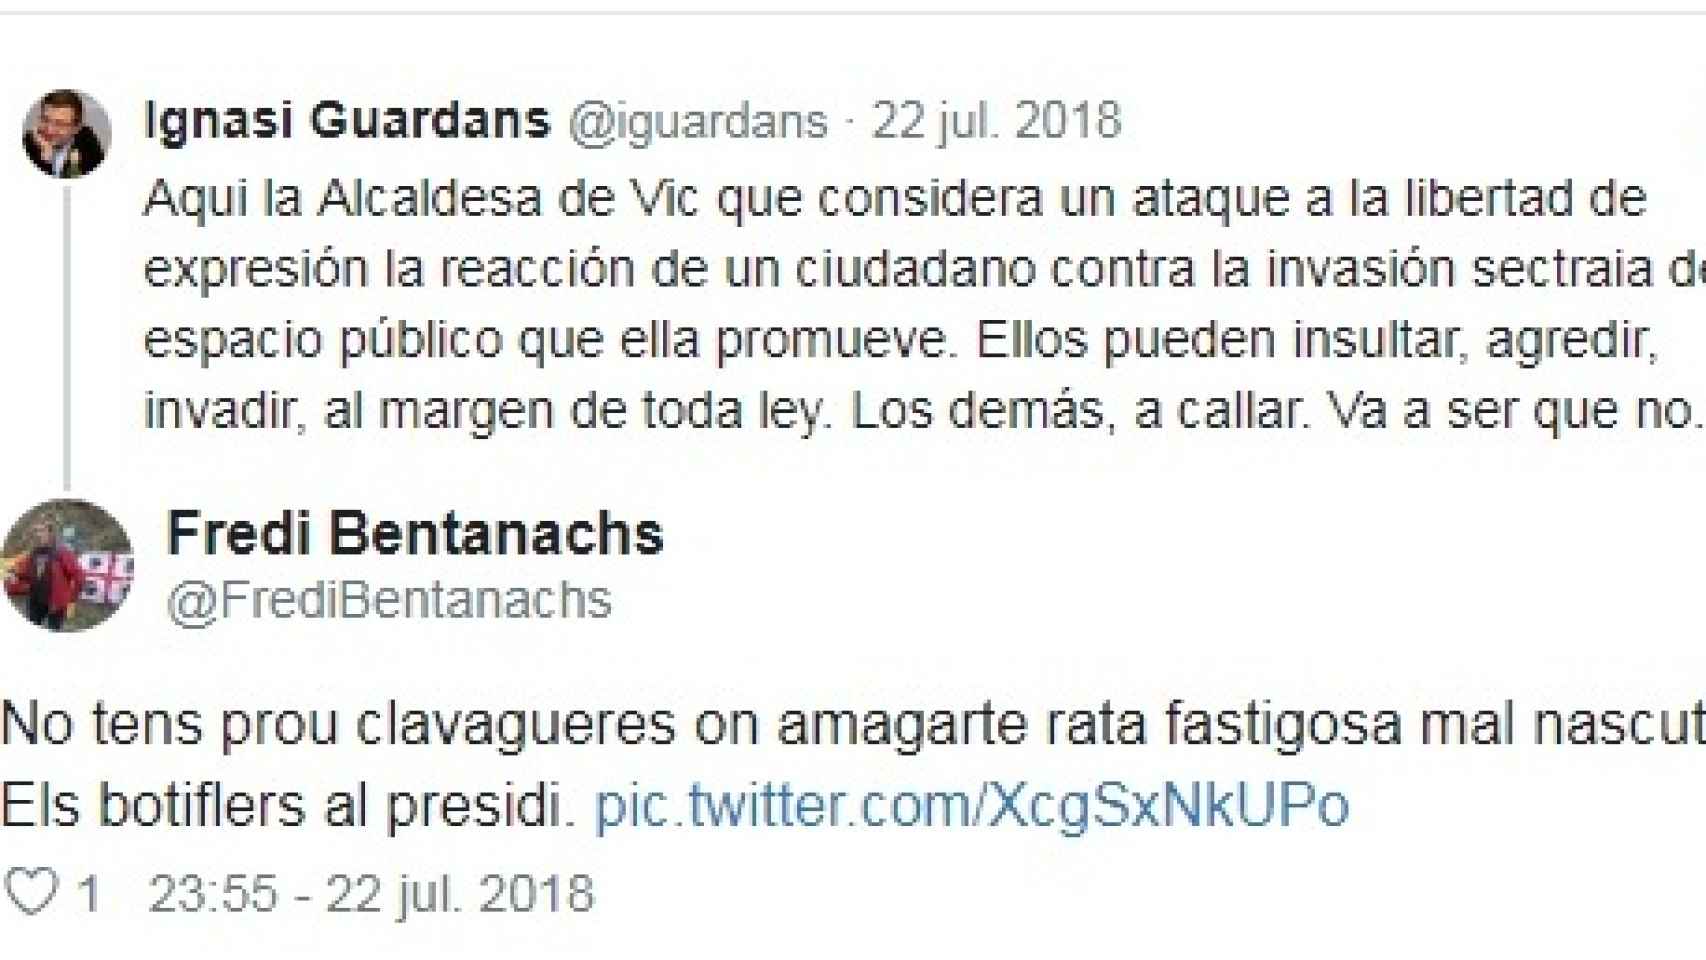 Bentanachs también insulta y amenaza a los catalanistas que no piensan como él